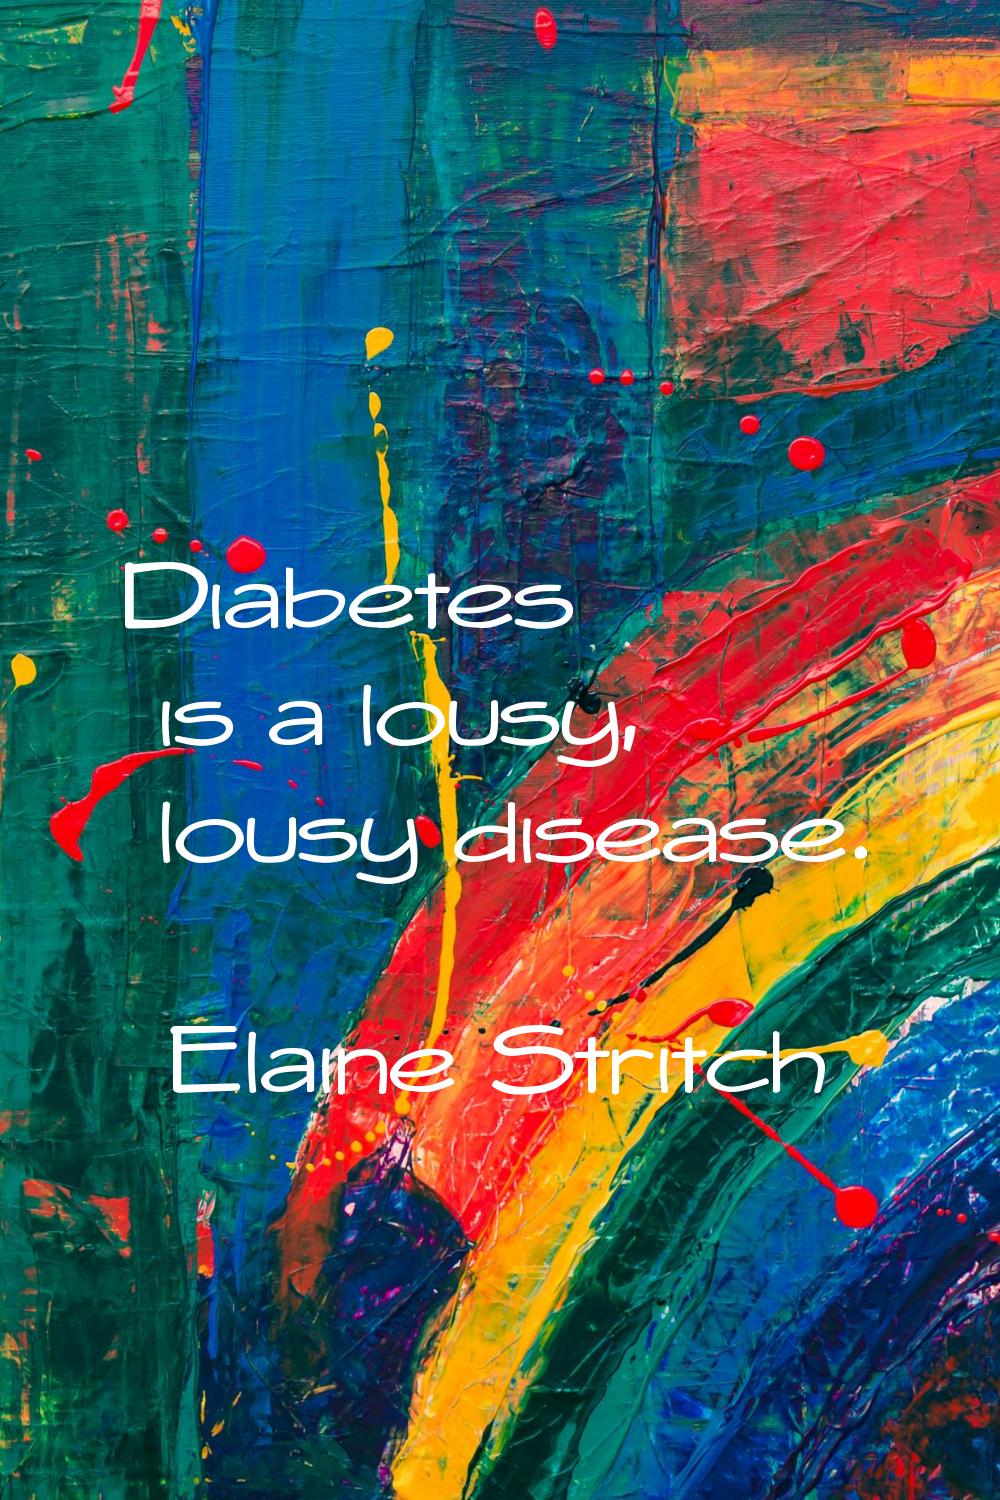 Diabetes is a lousy, lousy disease.